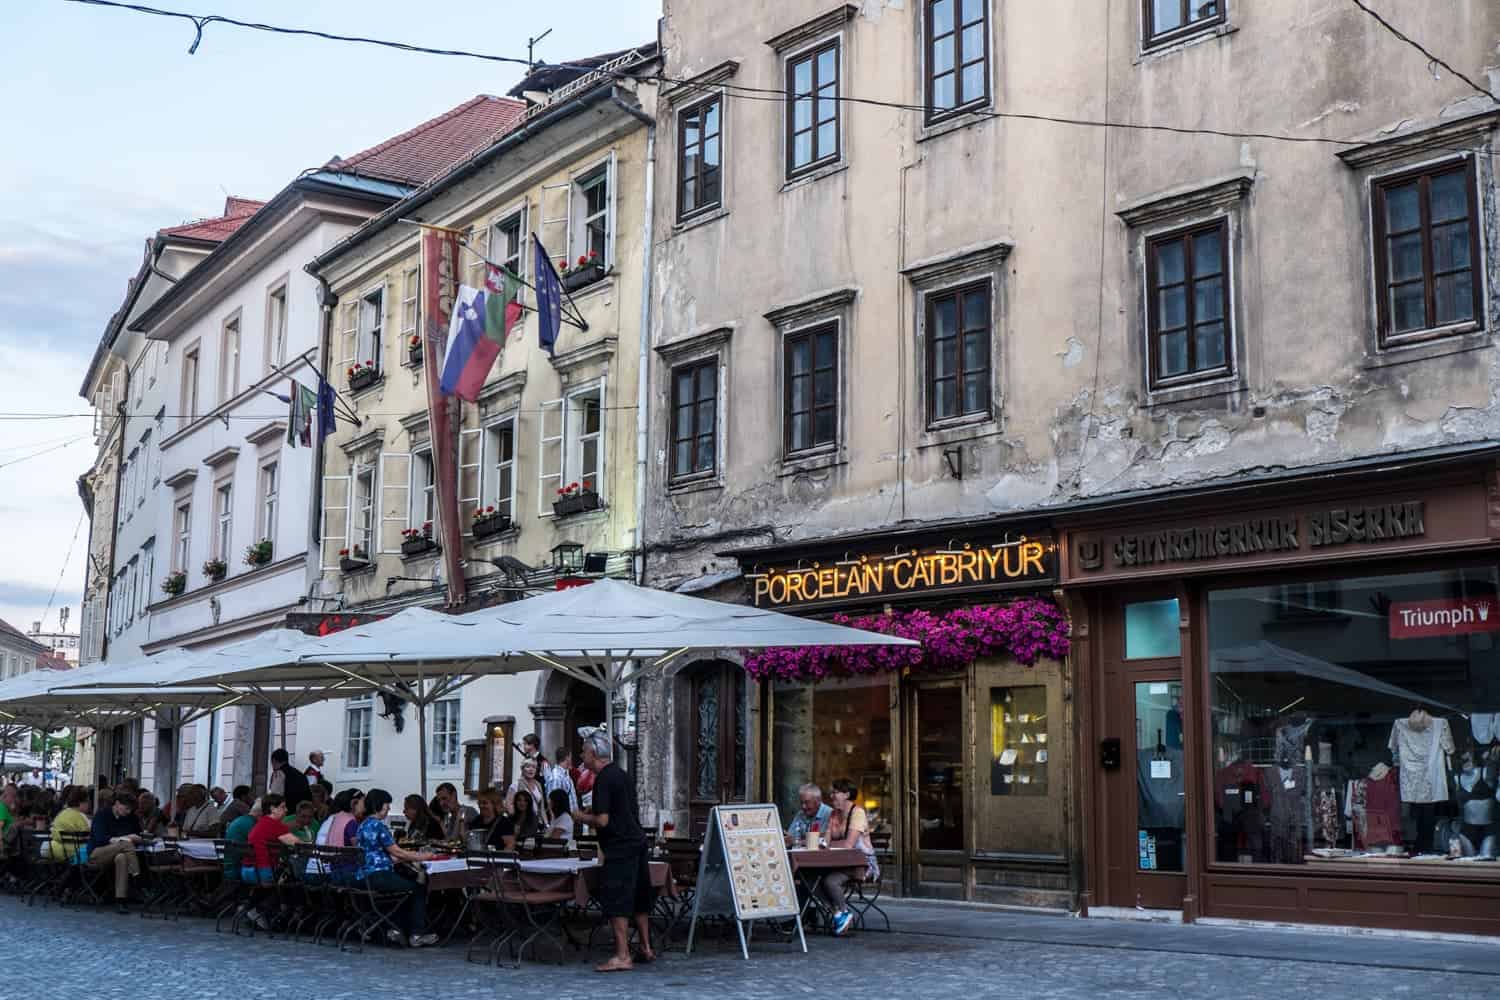 Al freso dining in Ljubljana Old Town, Slovenia